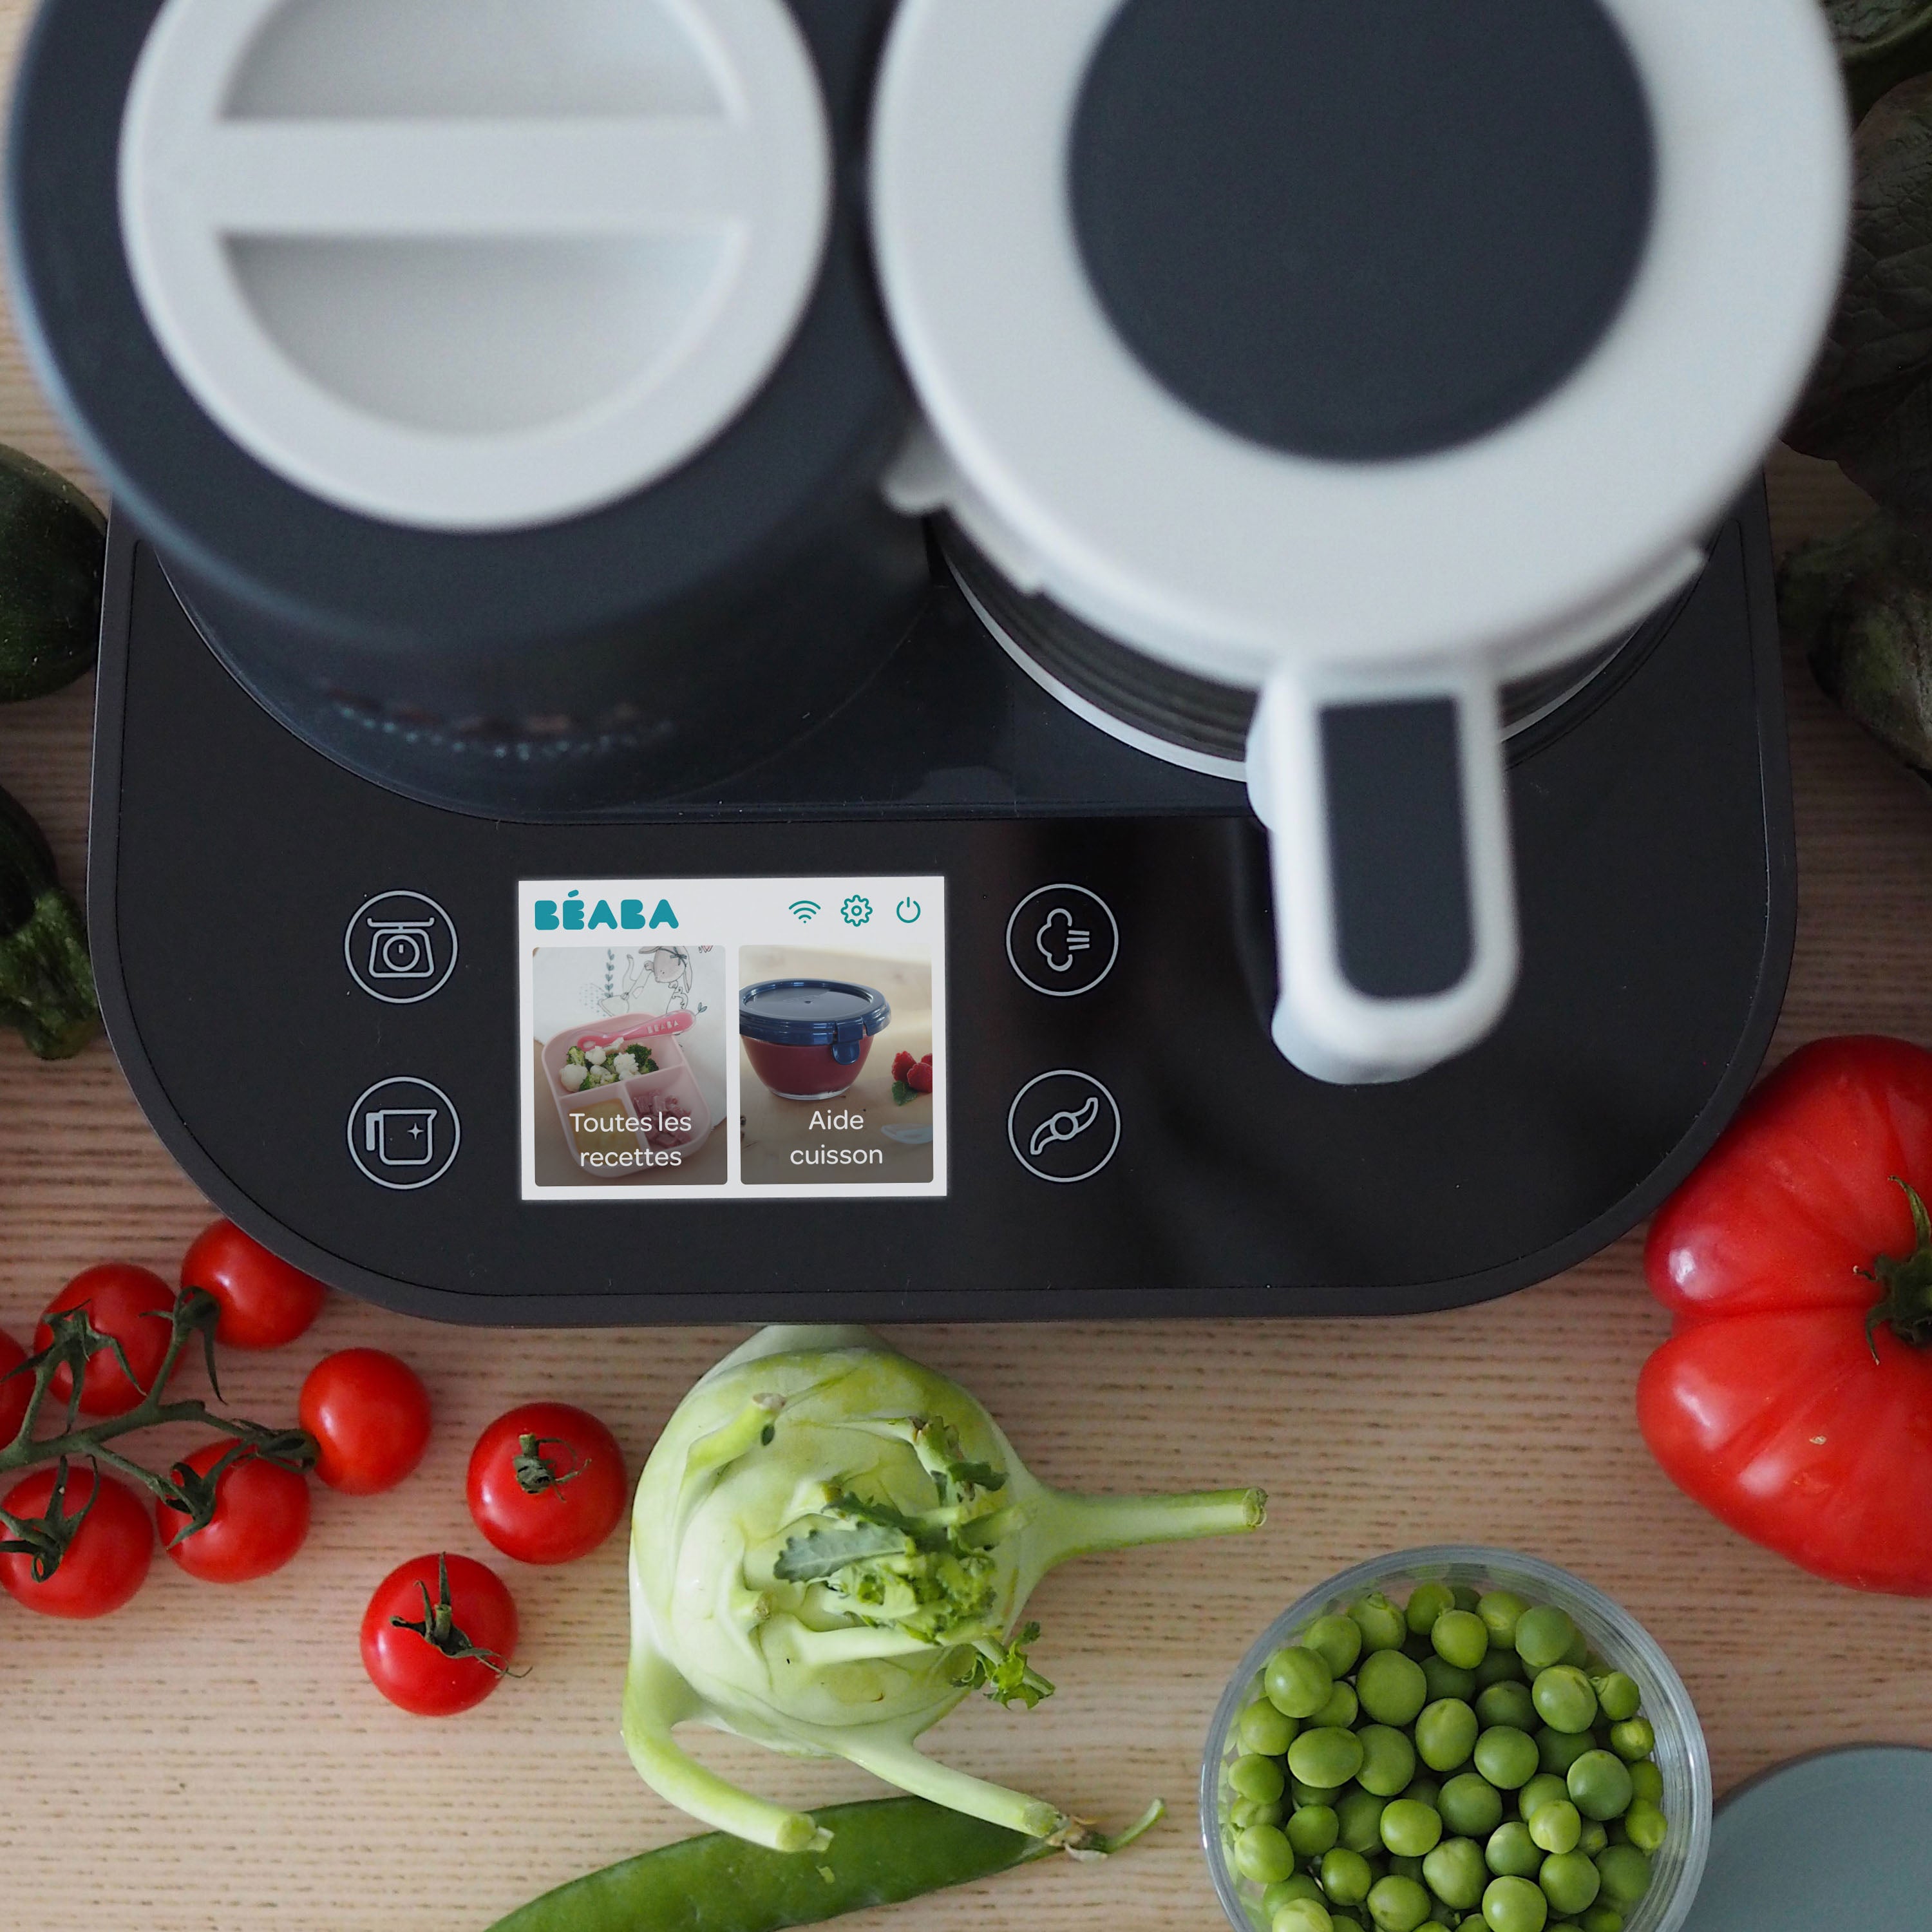 Beaba Babycook Smart Robot Cooker Top